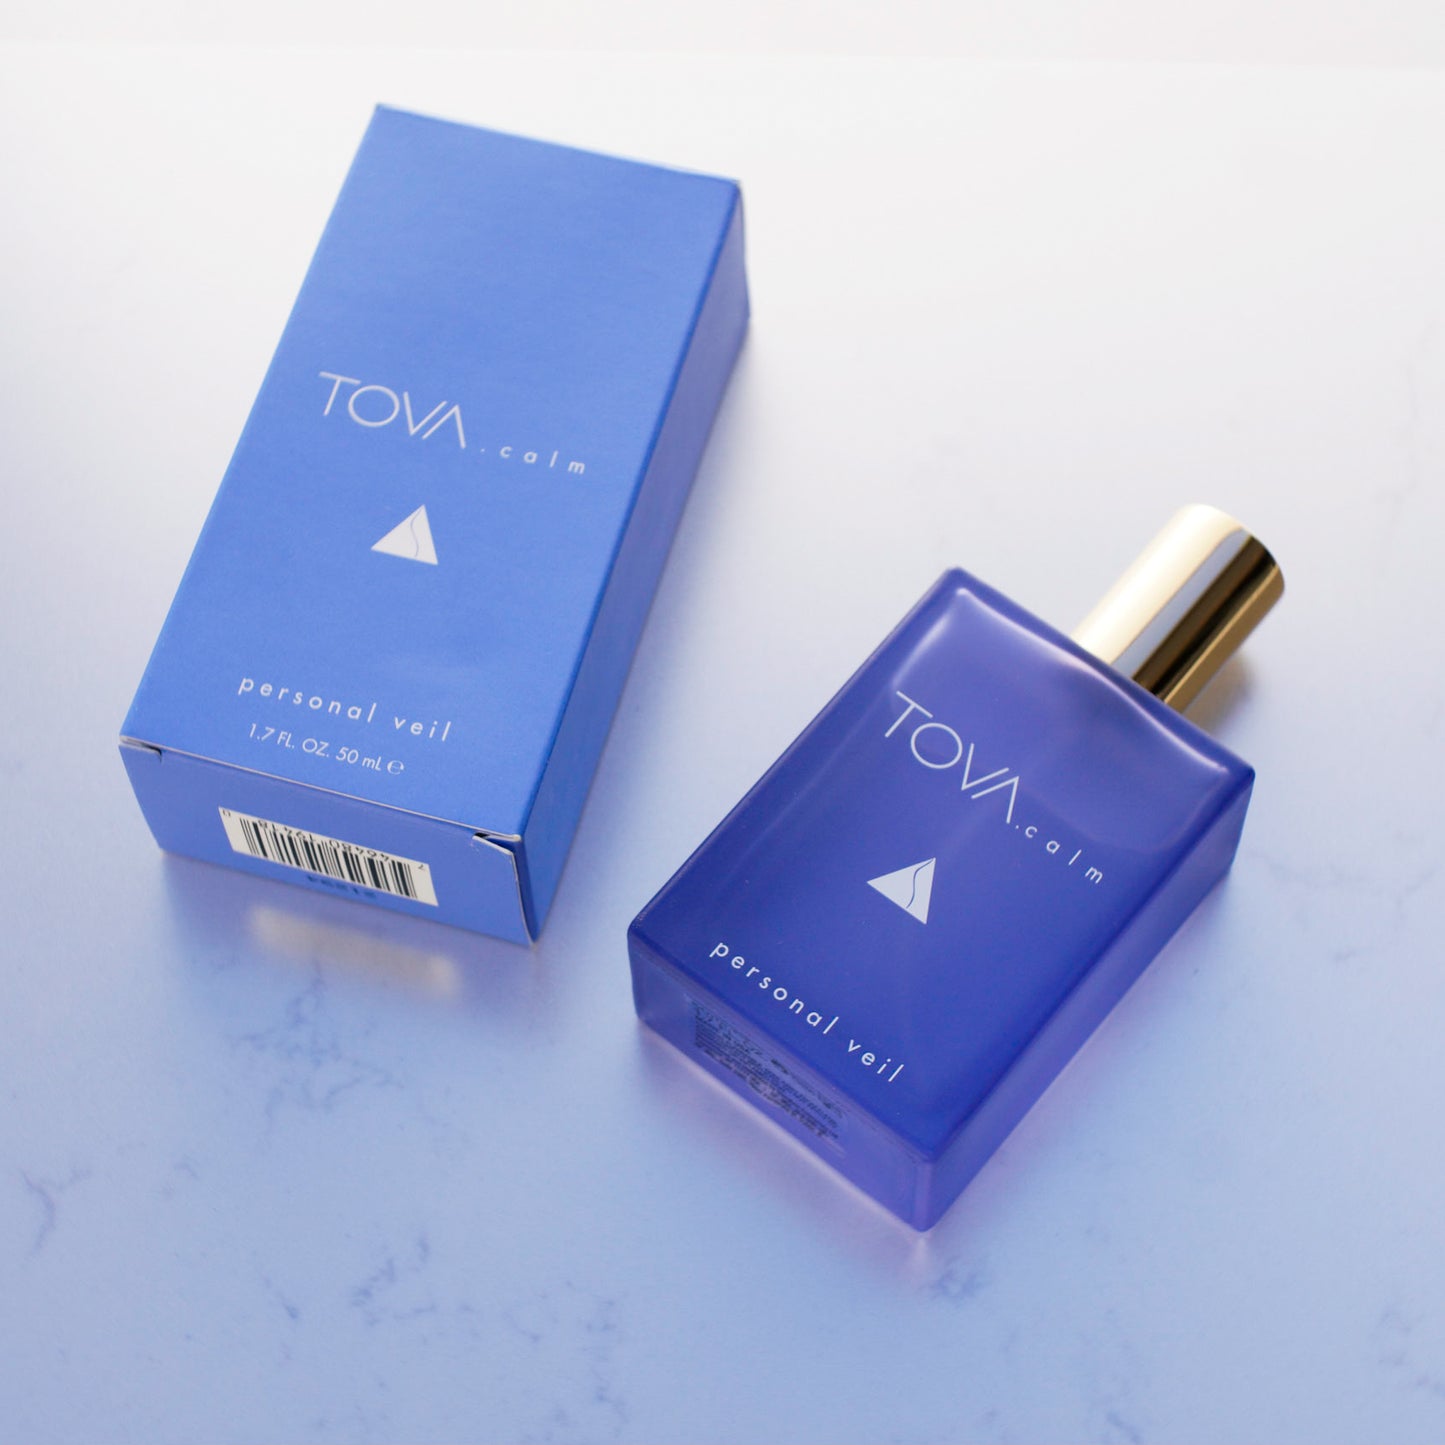 TOVA.calm Personal Veil Fragrance Spray 1.7 fl oz